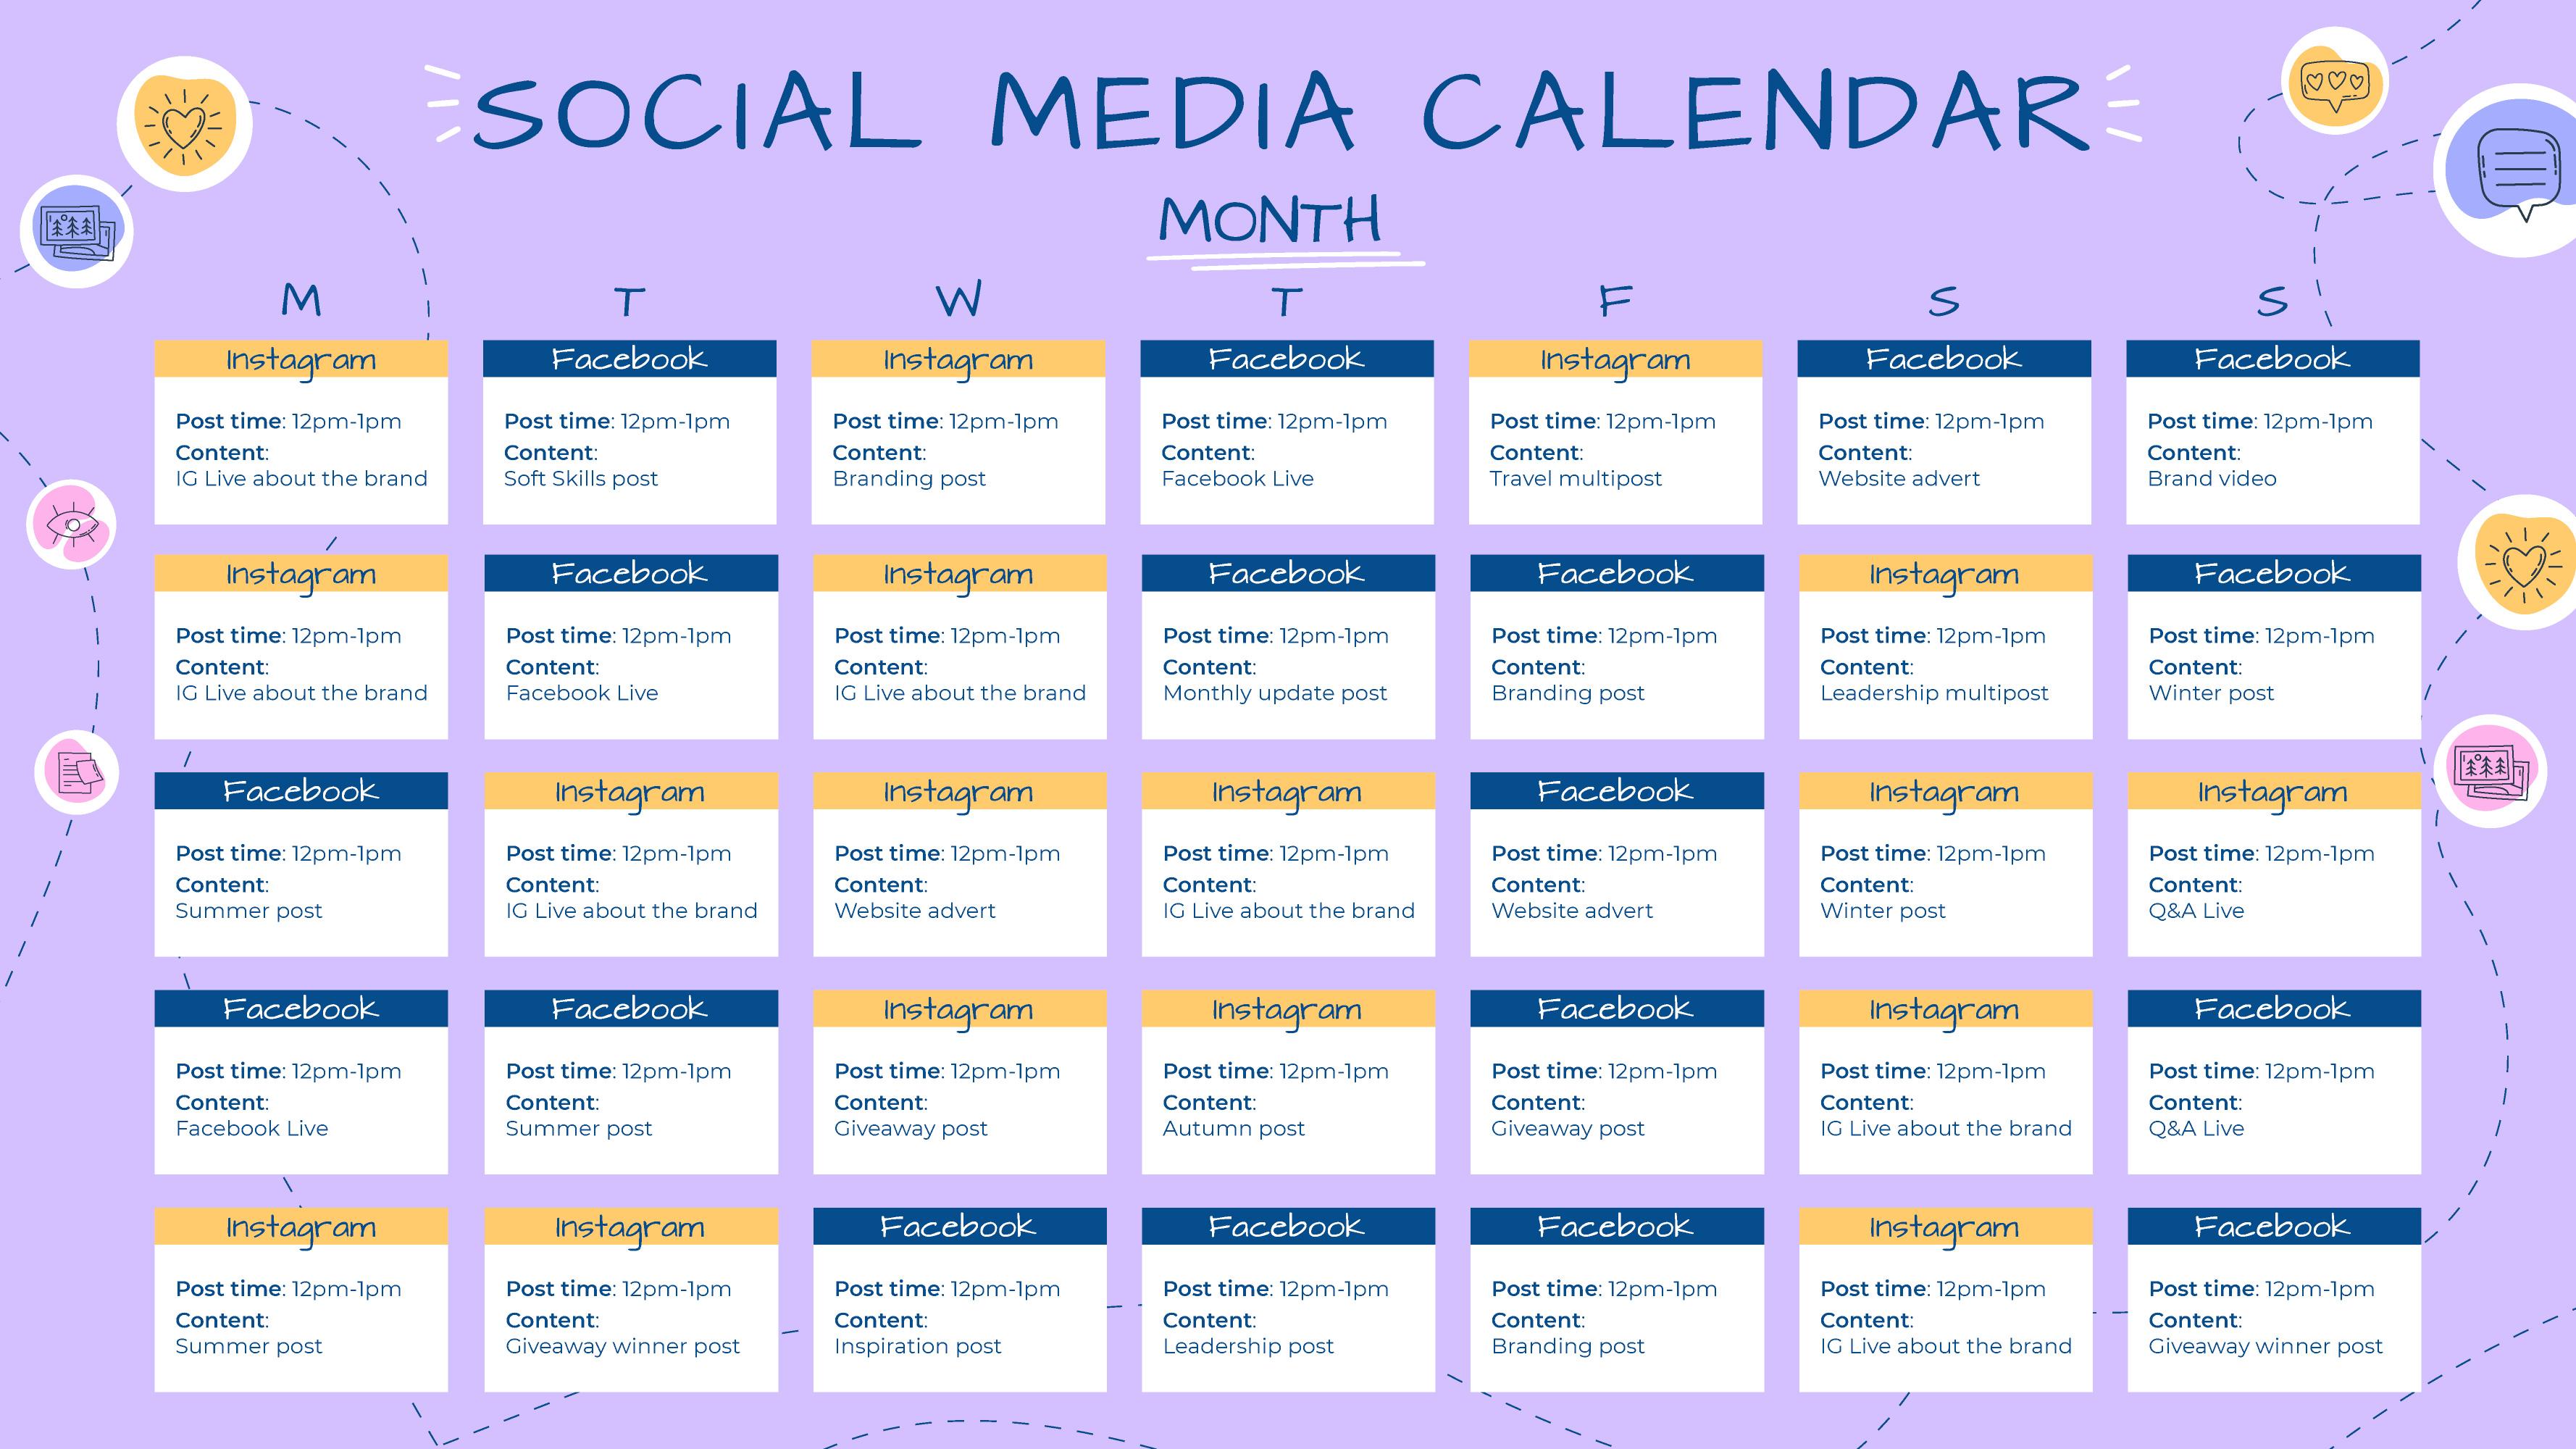 Social Media Calendar Templates Benefits And Tips Syntactics Inc 